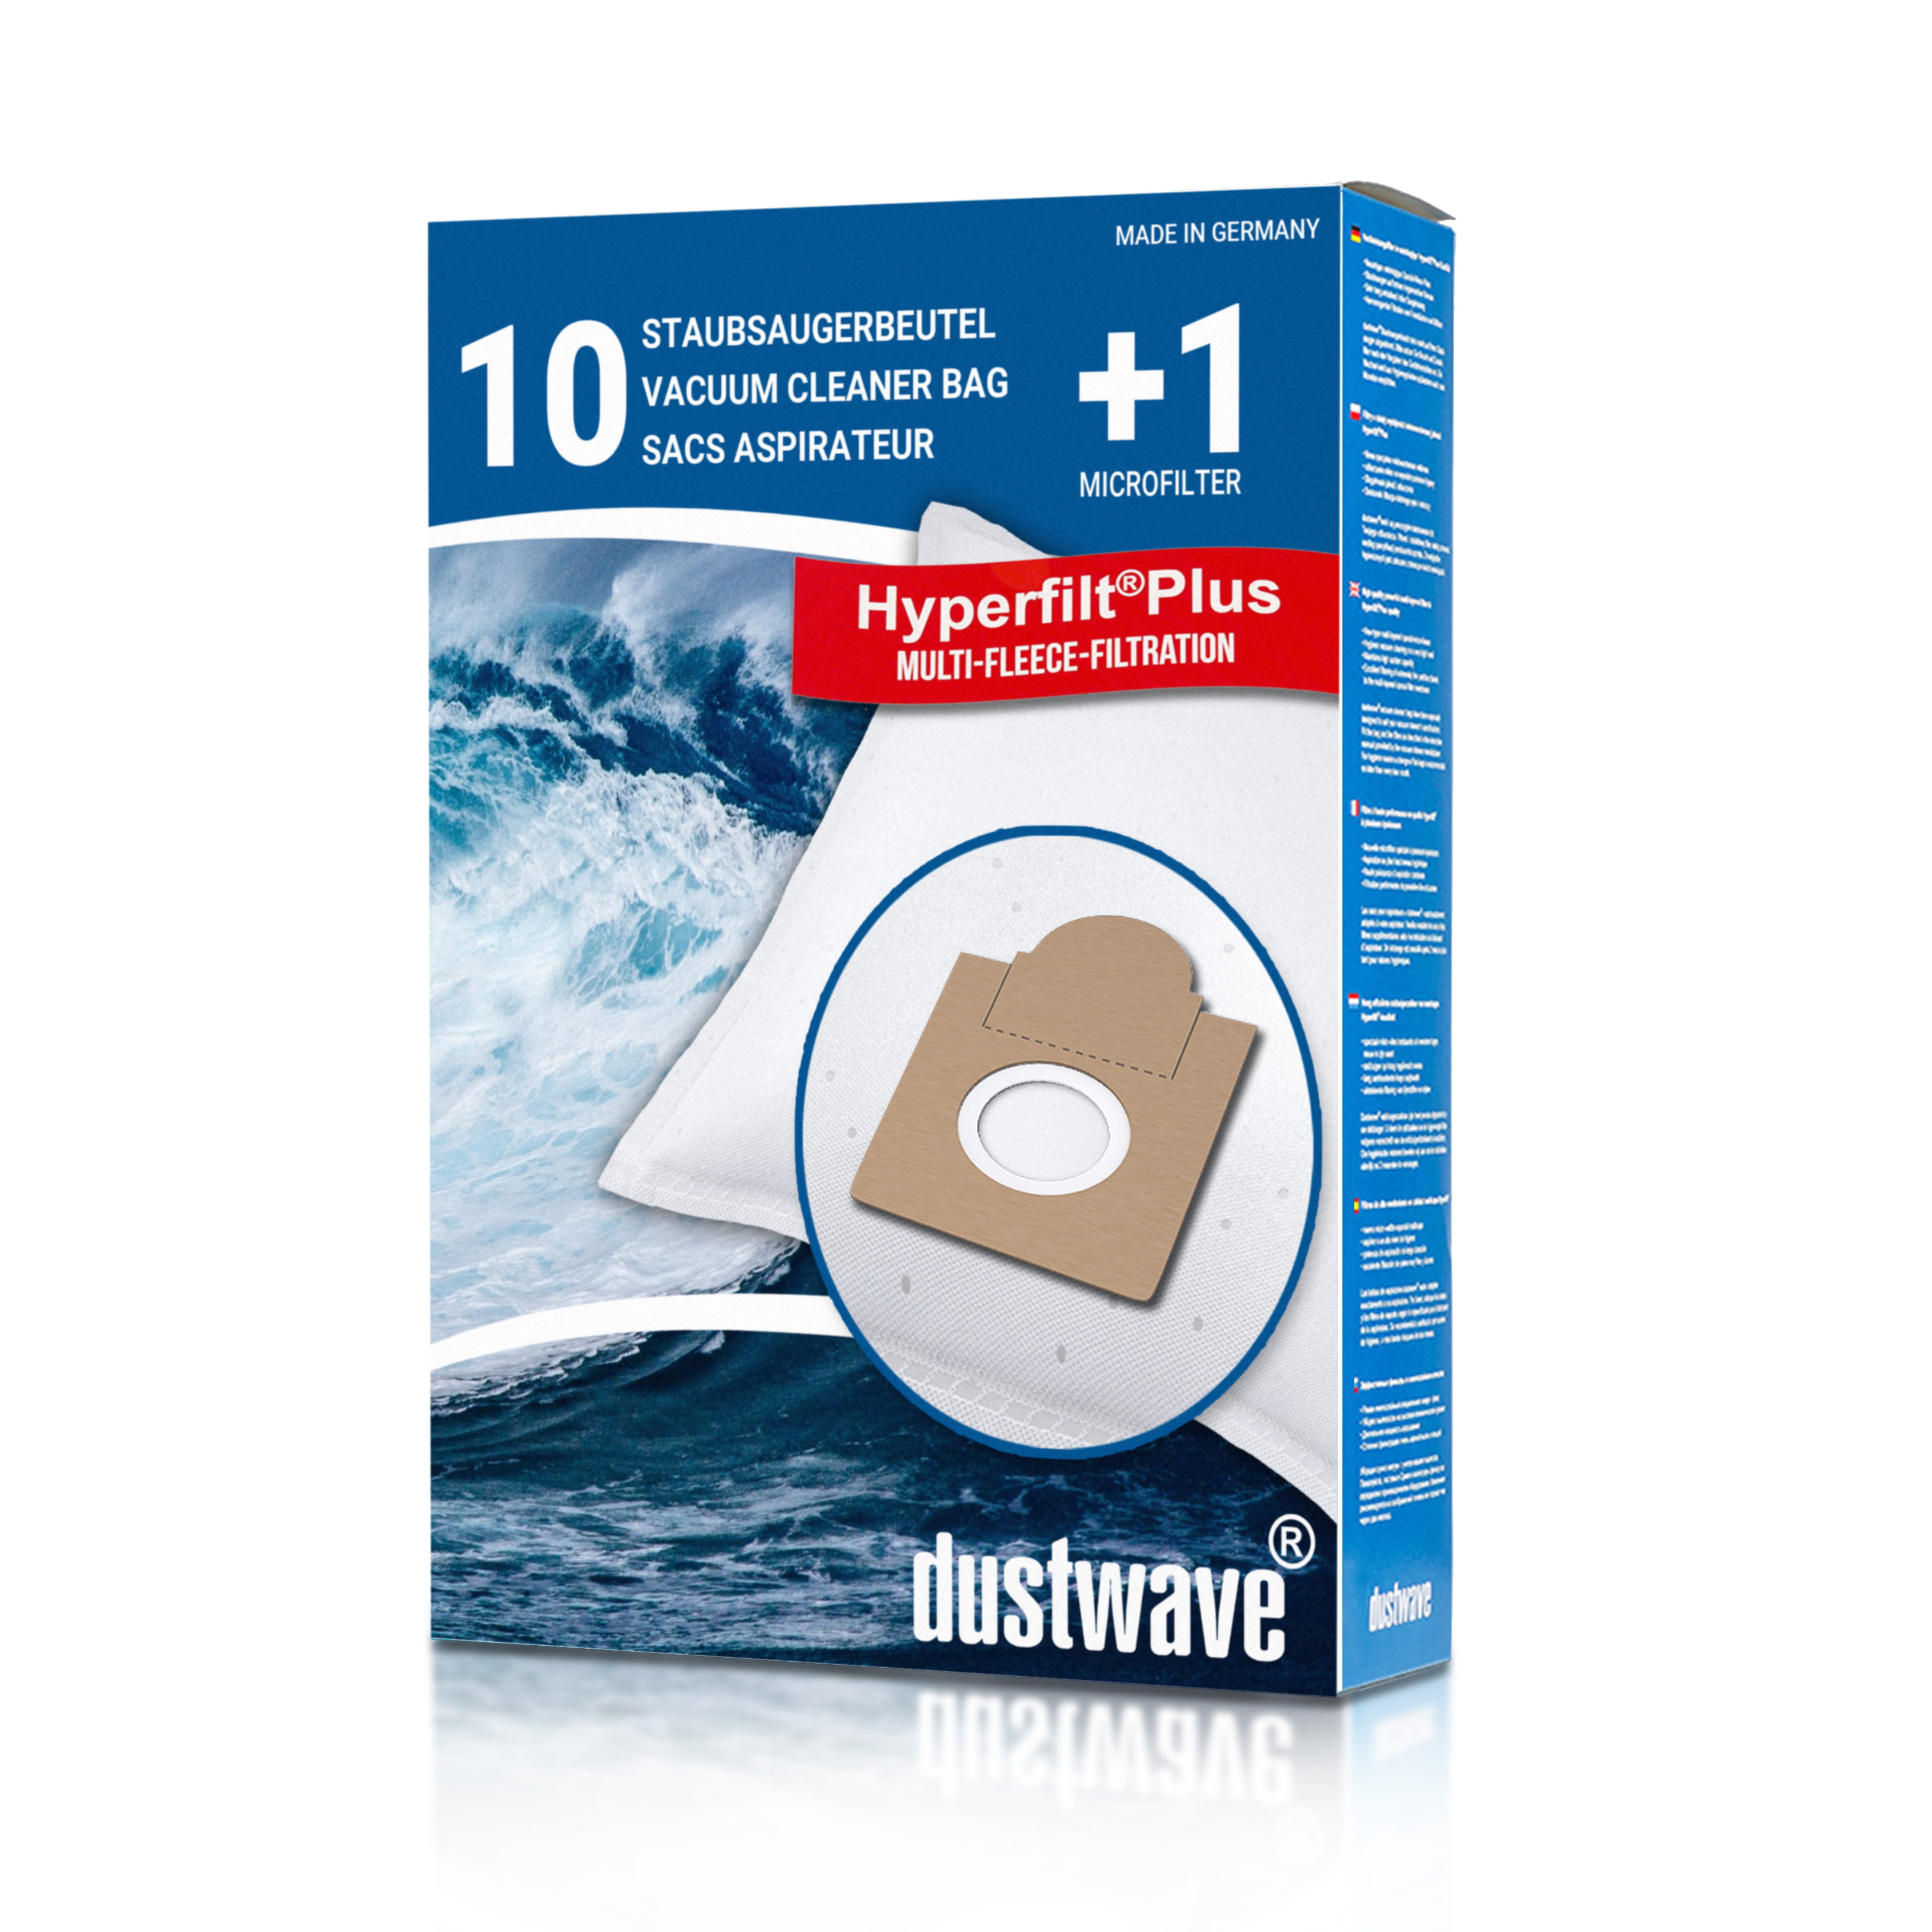 Dustwave® 10 Staubsaugerbeutel für Base BA 6002 - hocheffizient mit Hygieneverschluss - Made in Germany